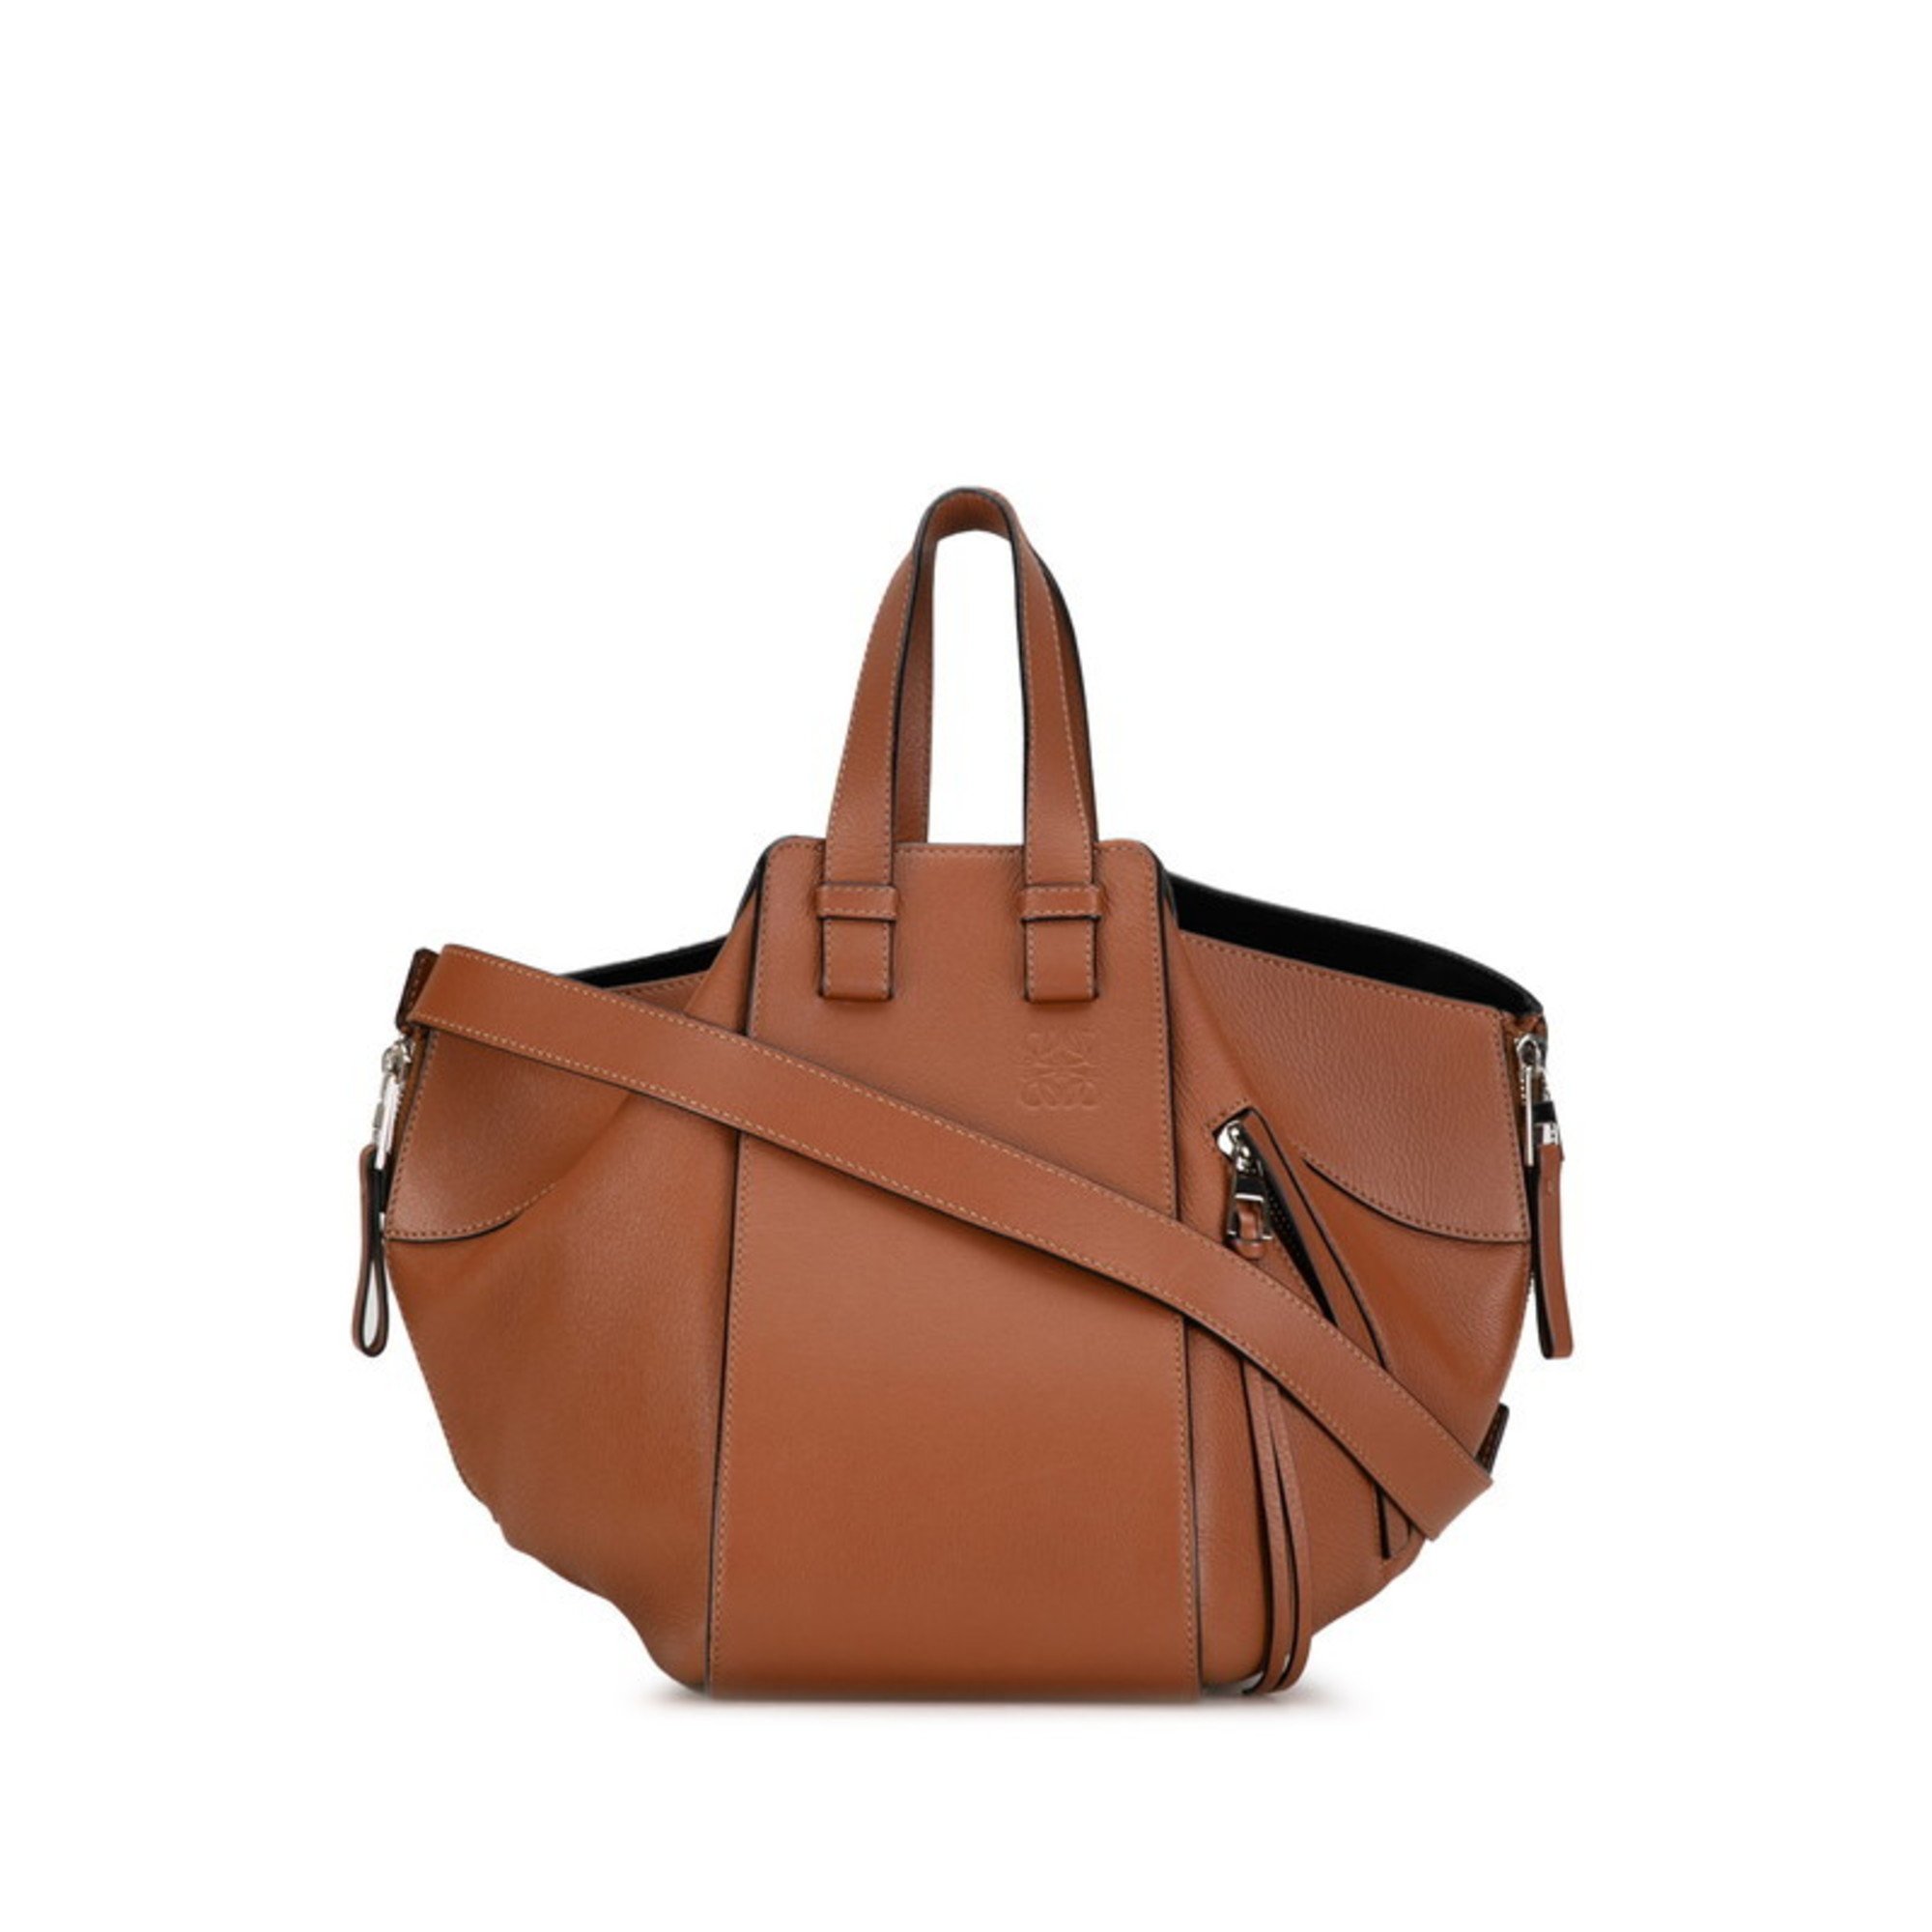 LOEWE Hammock Small Handbag Shoulder Bag Tan Brown Leather Women's